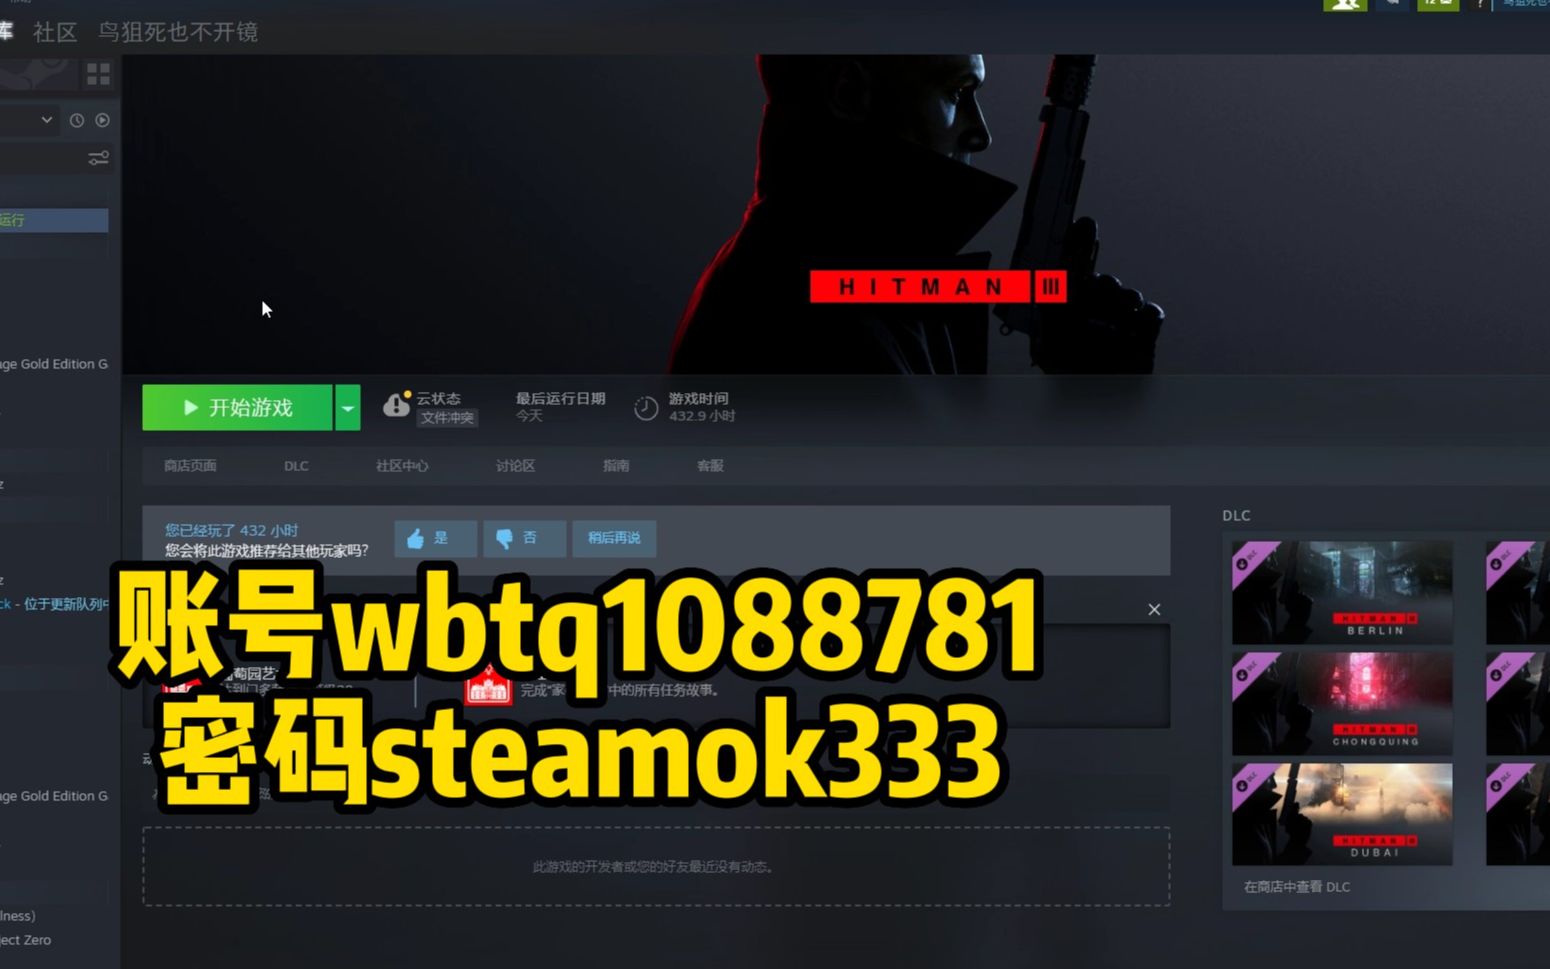 免费送《杀手3》steam账号wbtq1088781密码steamok333